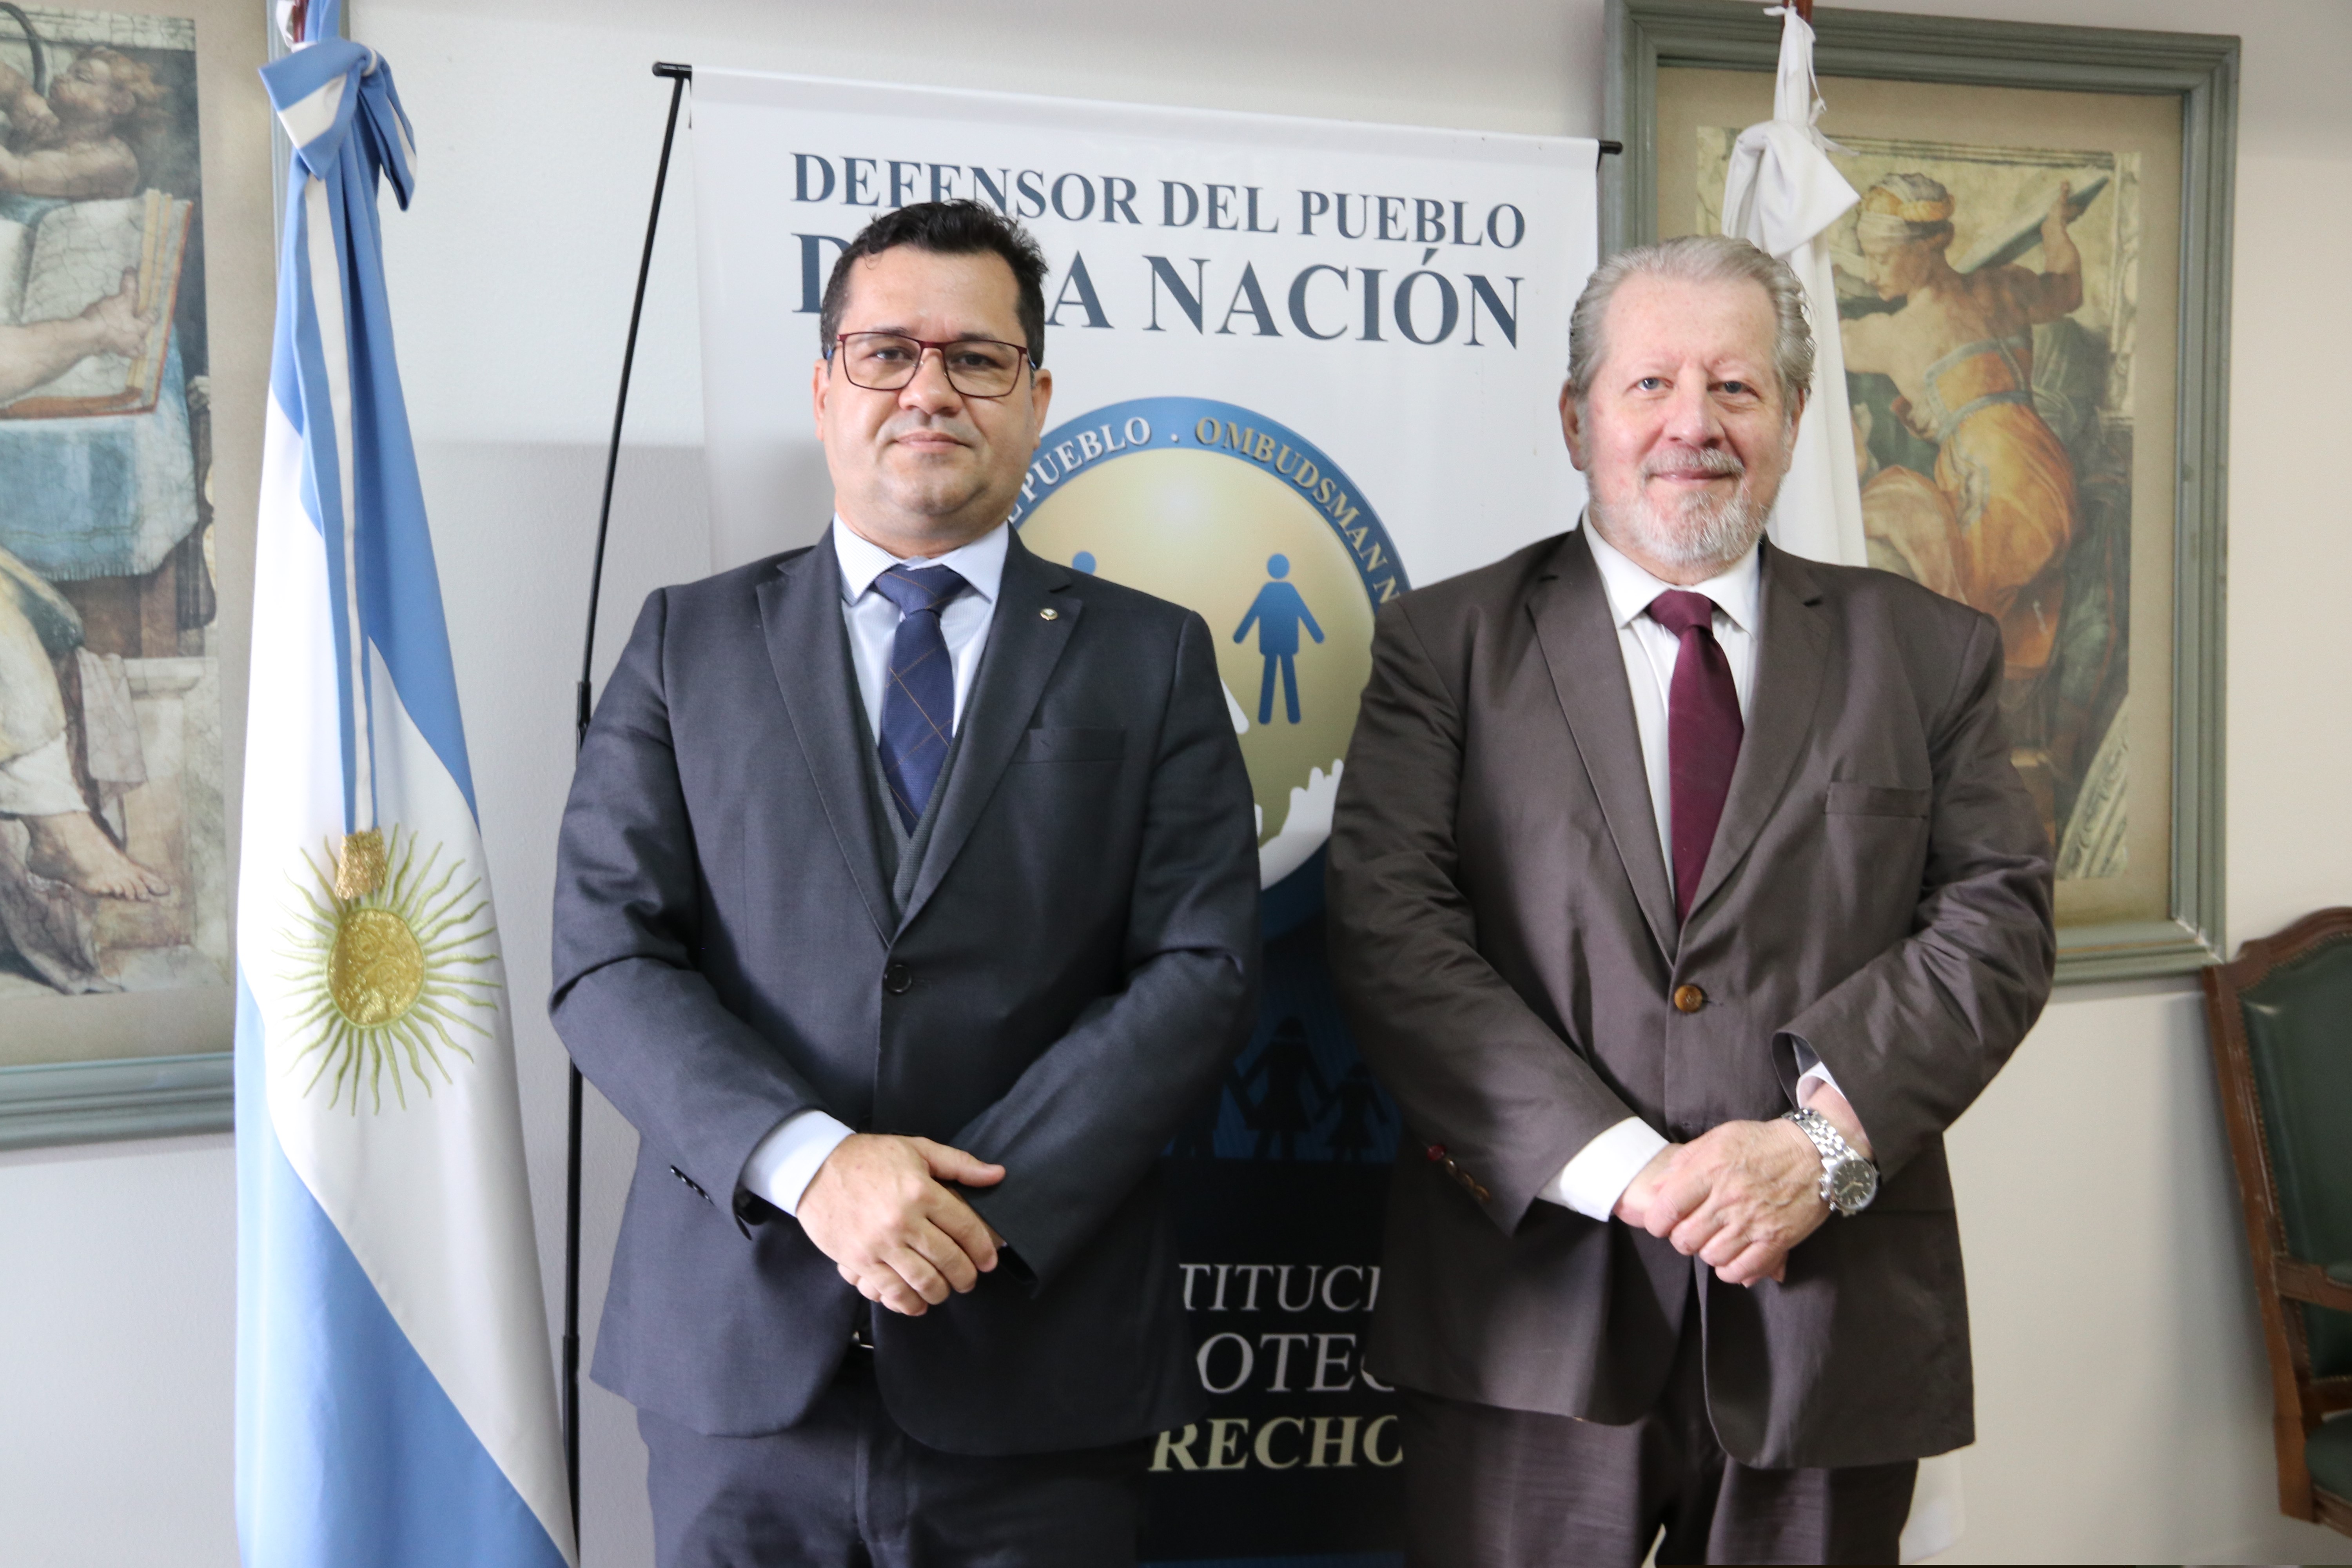 El Defensor Público-General Federal de Brasil visitó la Defensoría del Pueblo de la Nación Argentina